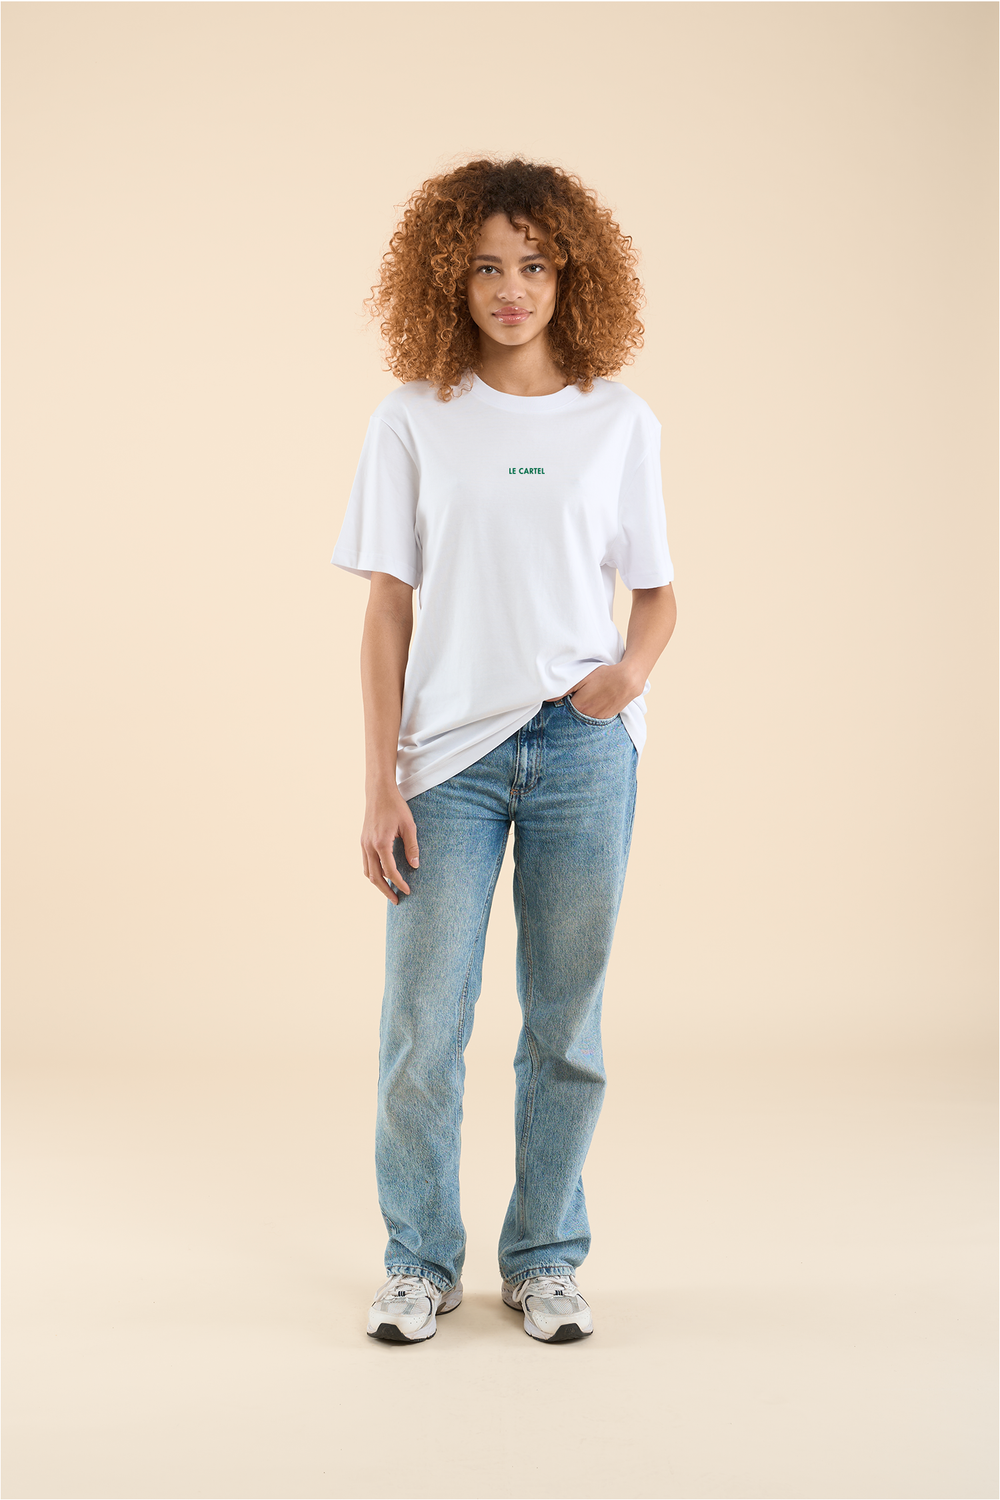 AMOURS MIGRATEURS・T-shirt unisexe・Blanc